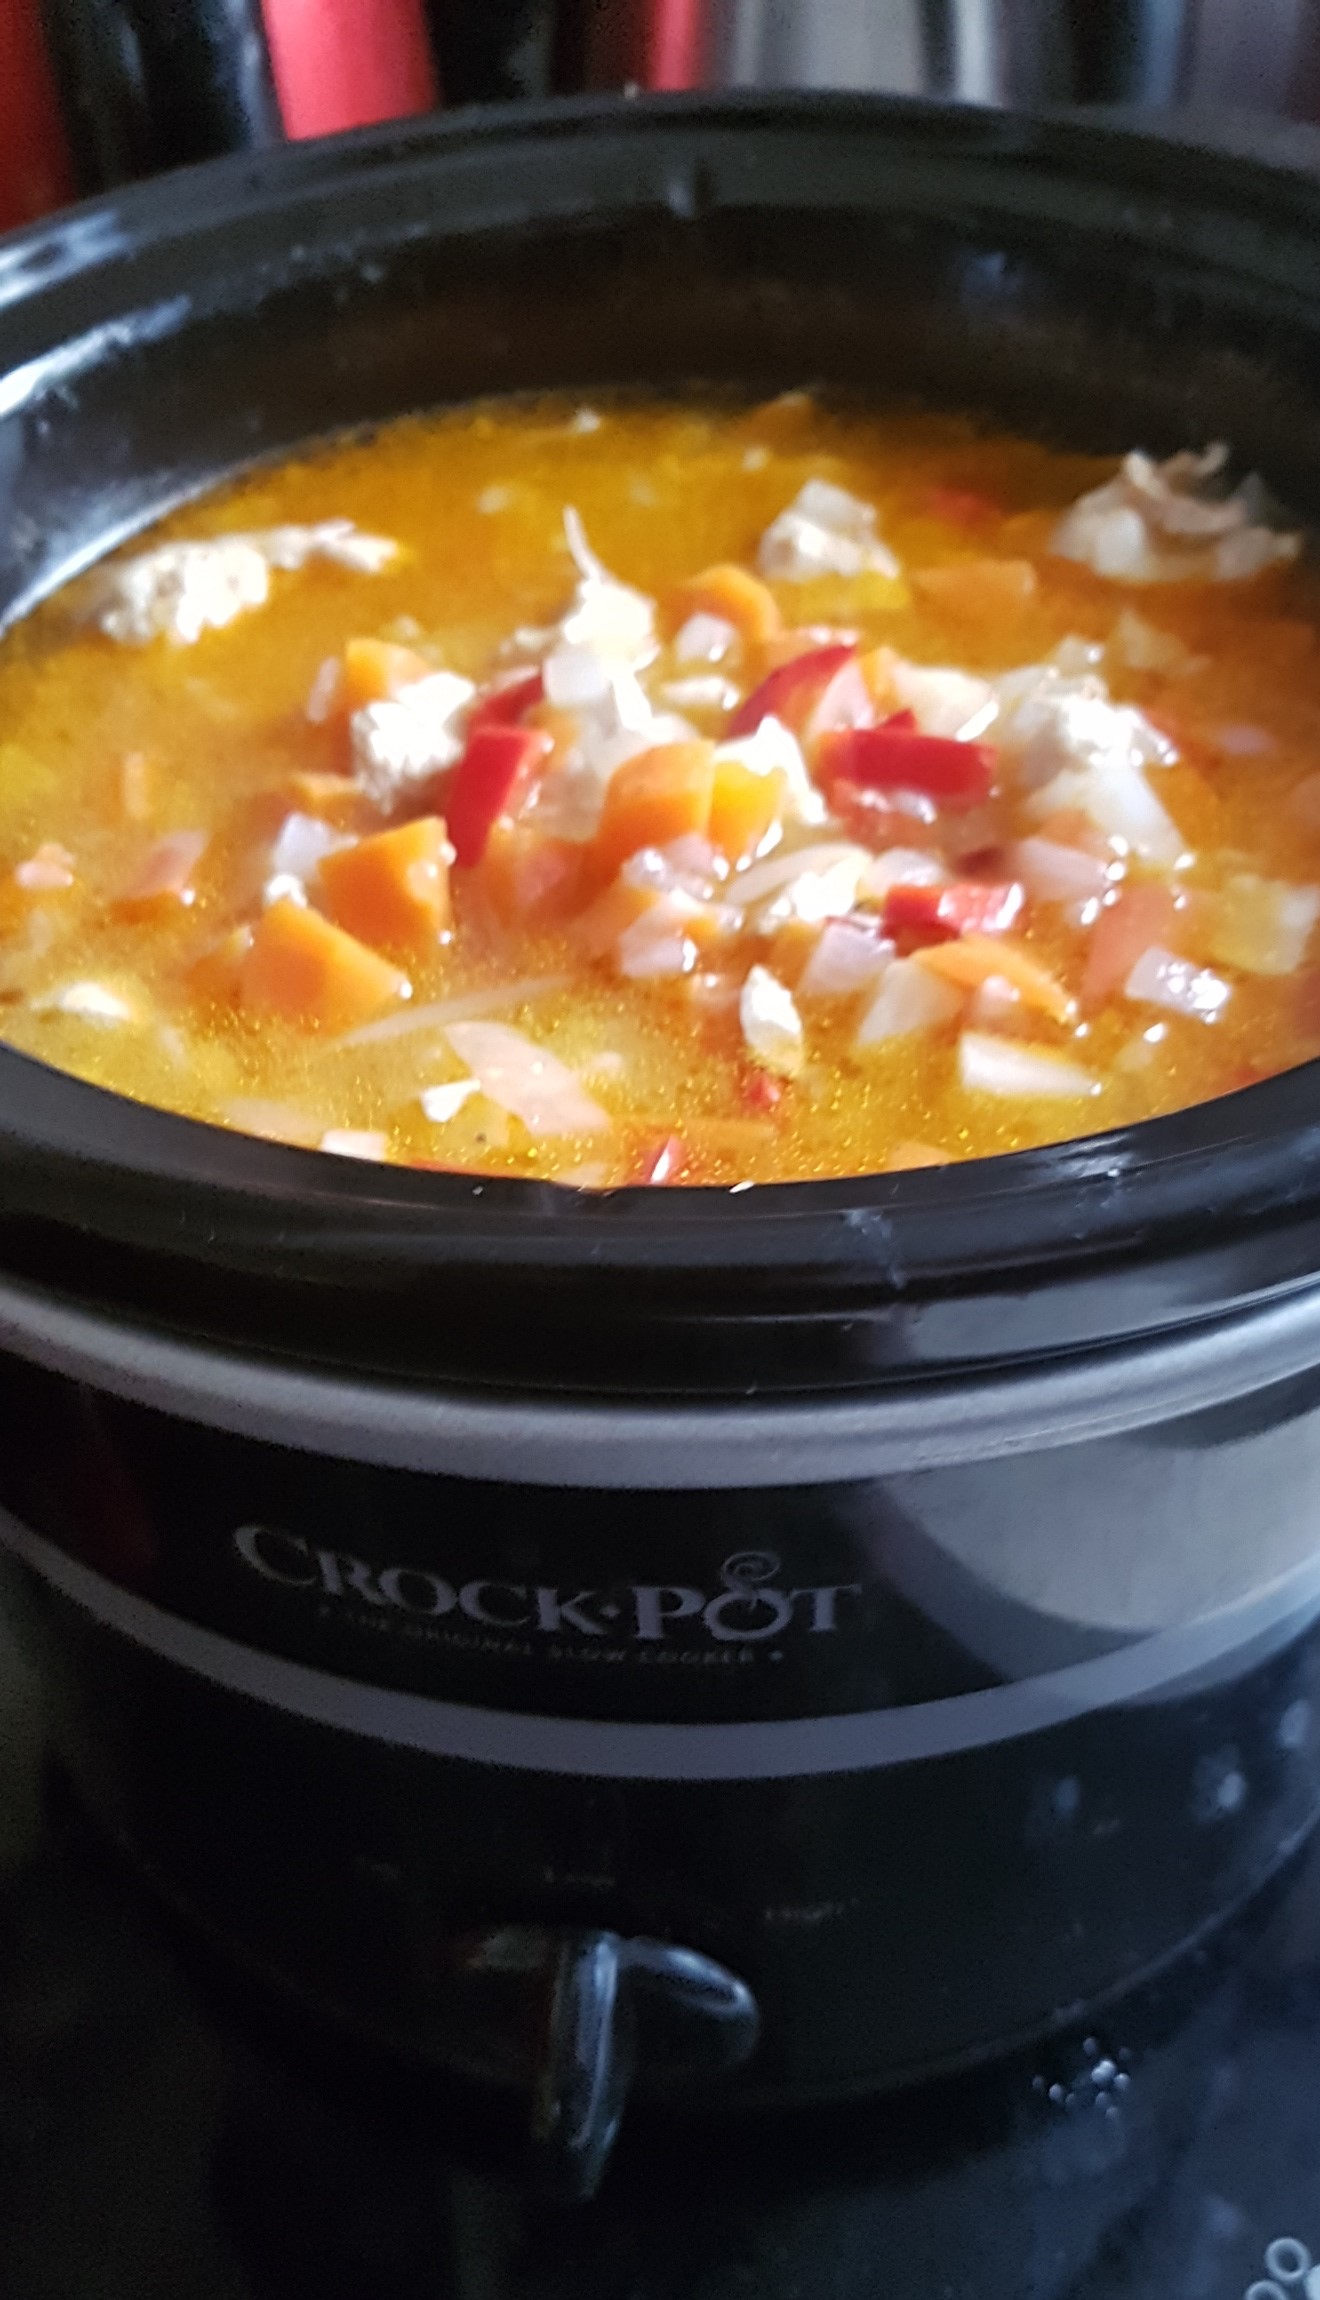 Ciorba taraneasca de pui la slow cooker Crock Pot